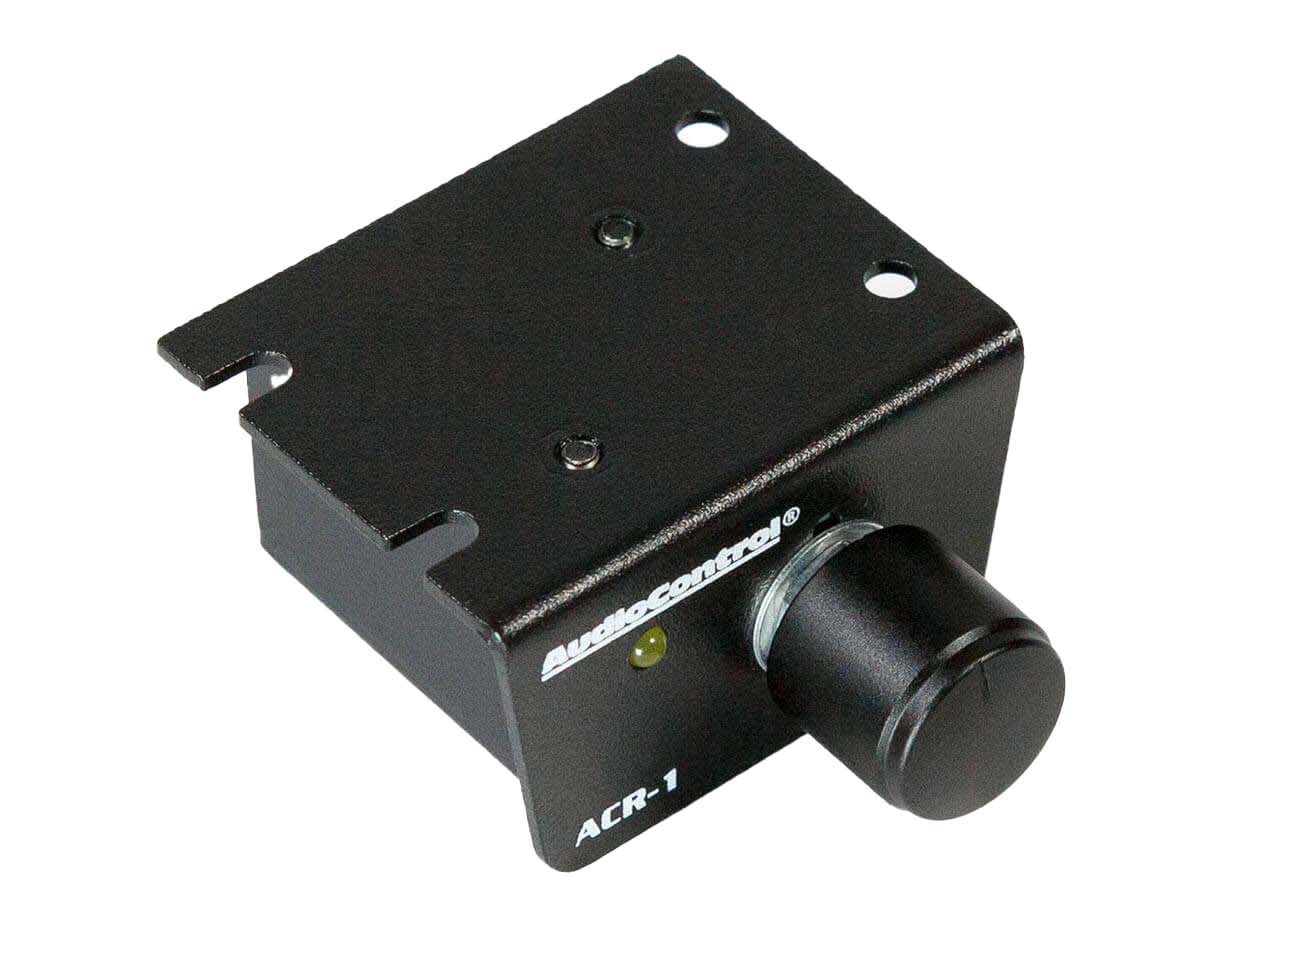 AudioControl ACR 1 Dash Remote - Side